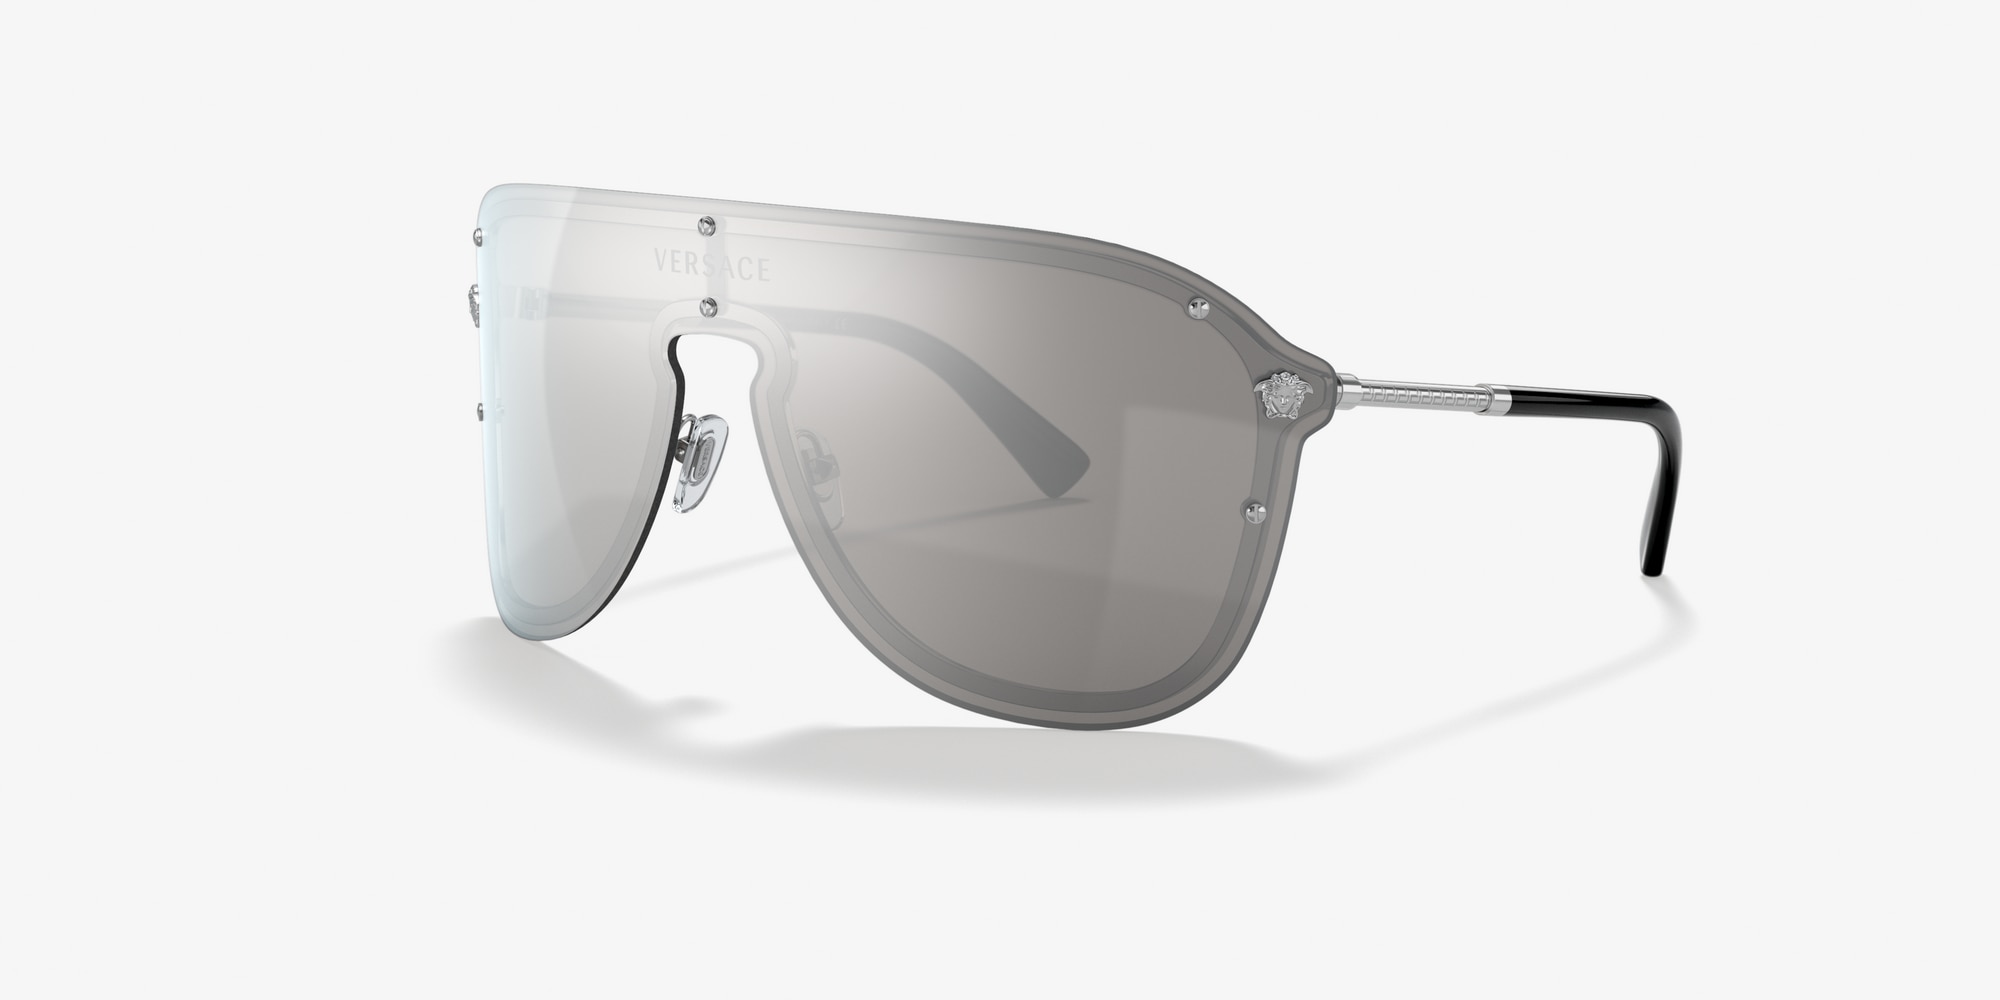 versace inspired sunglasses